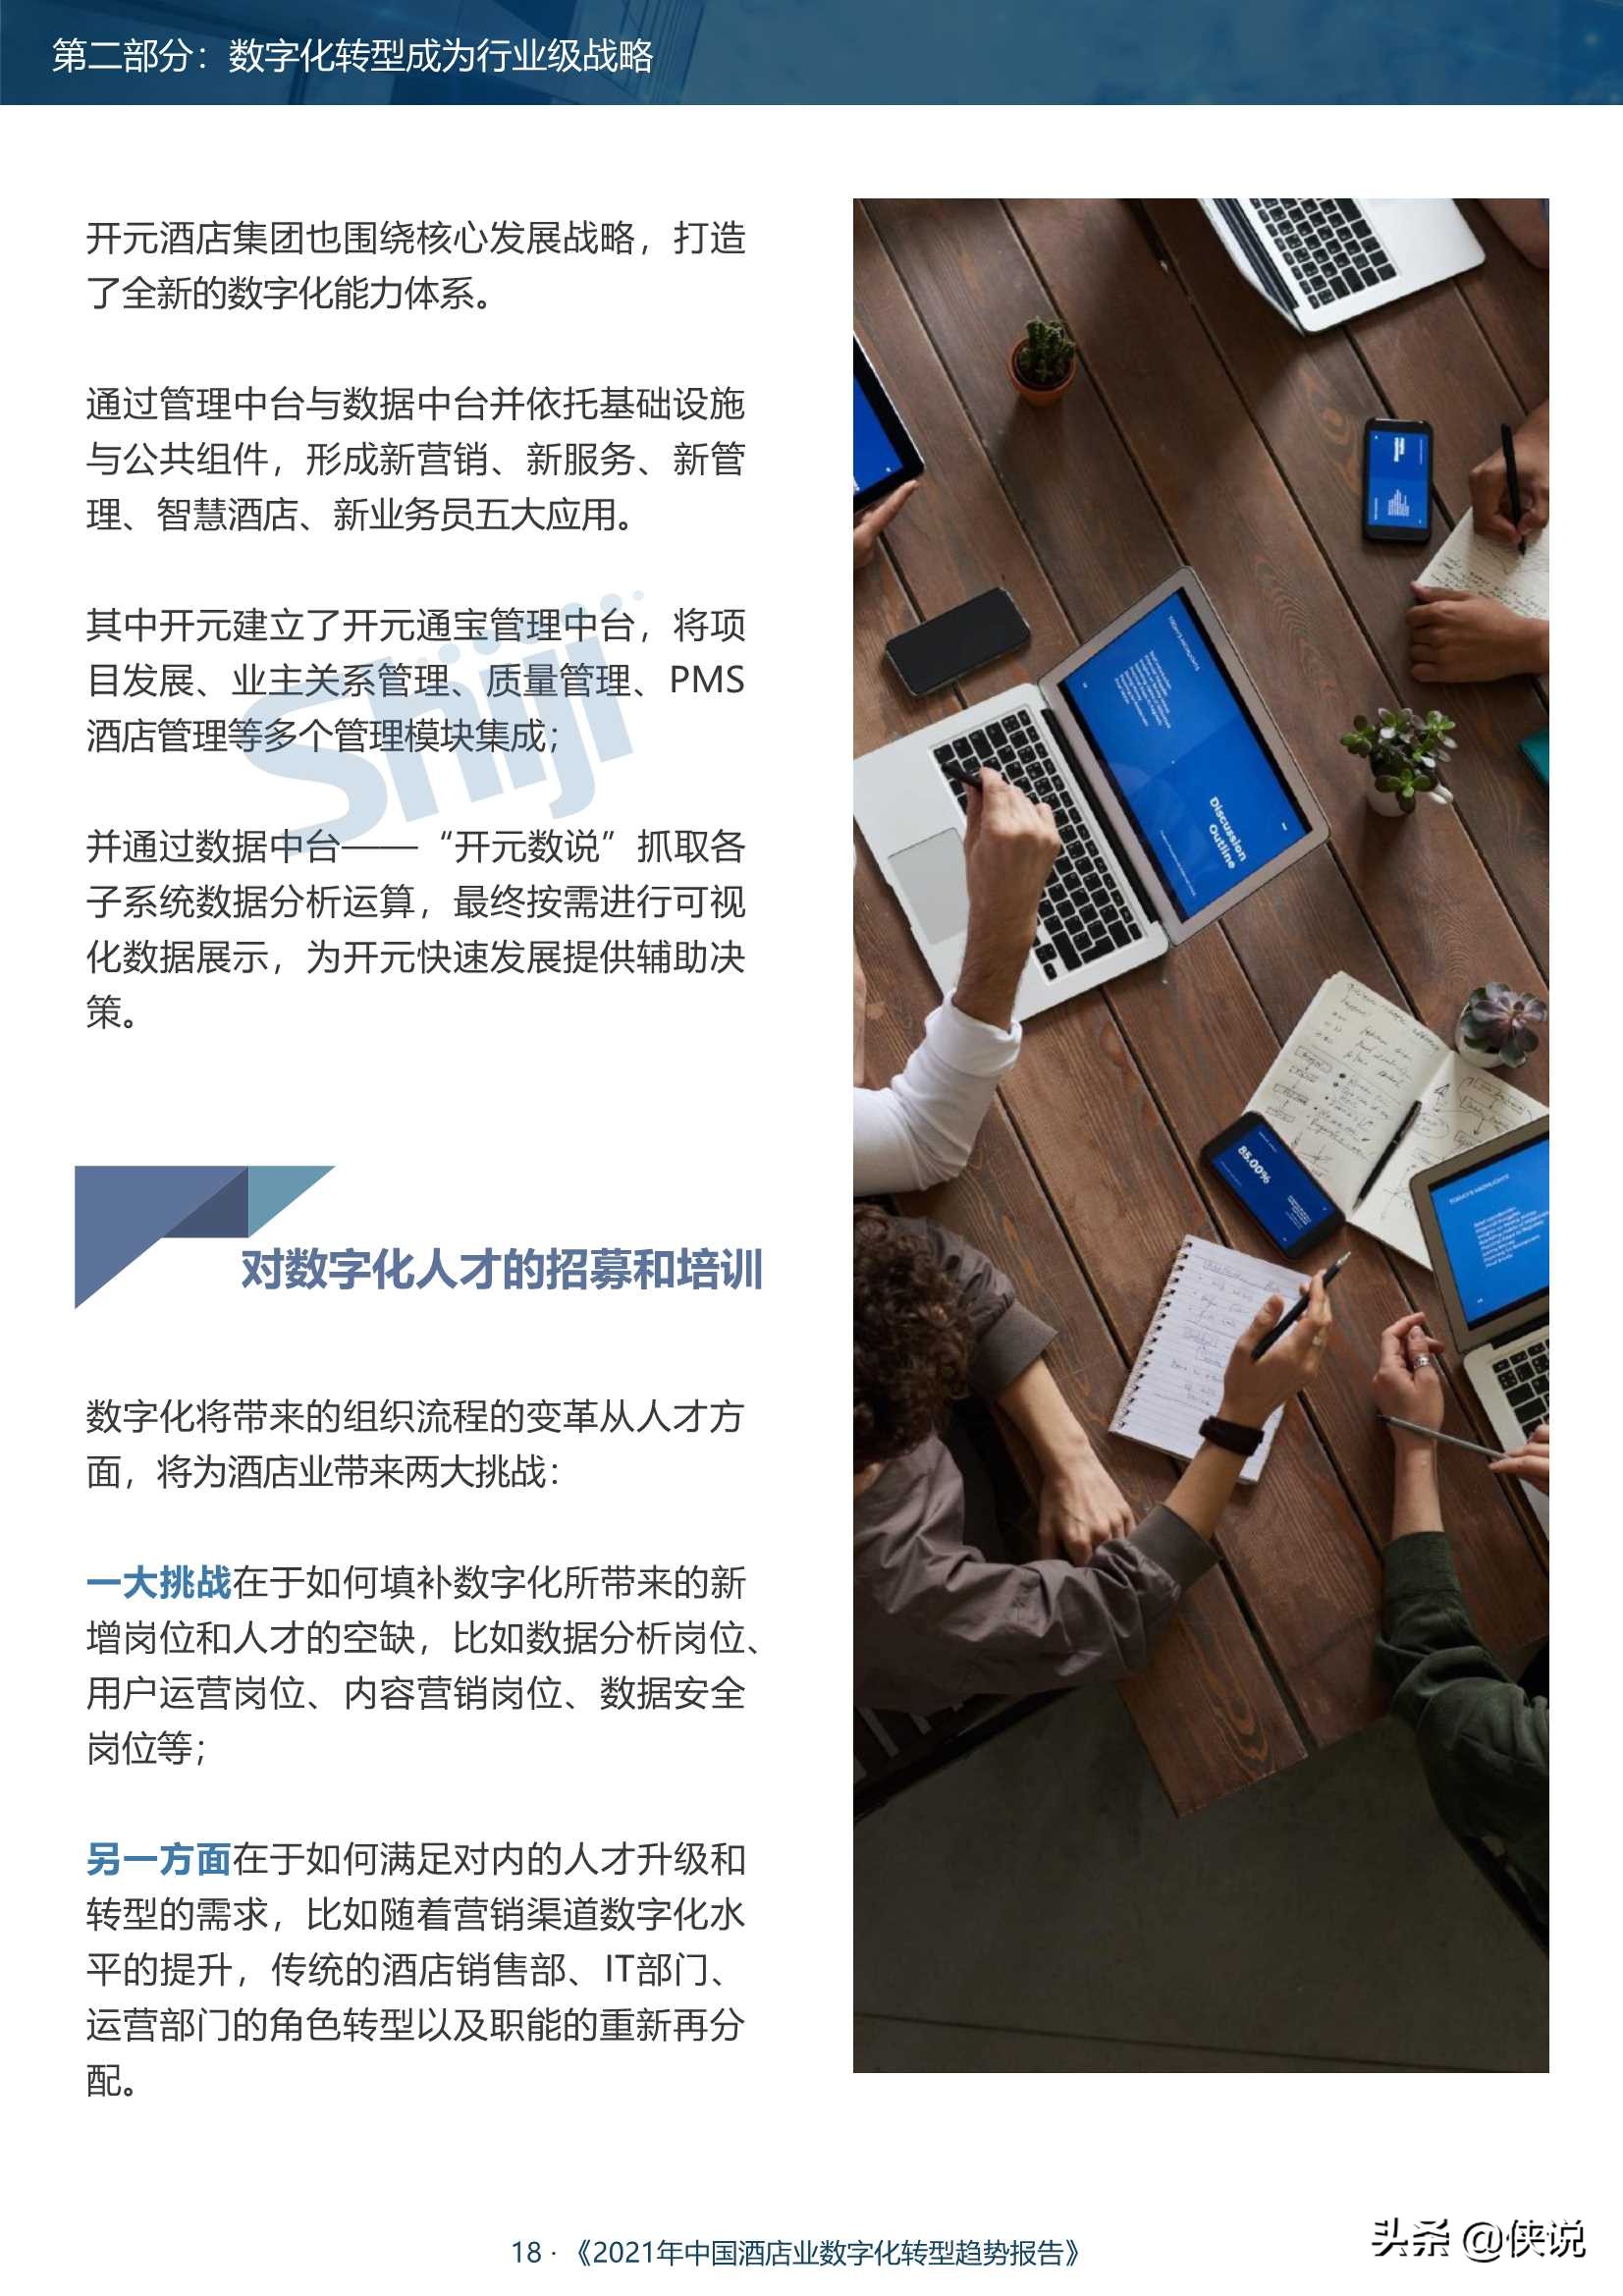 2021年中国酒店业数字化转型趋势报告